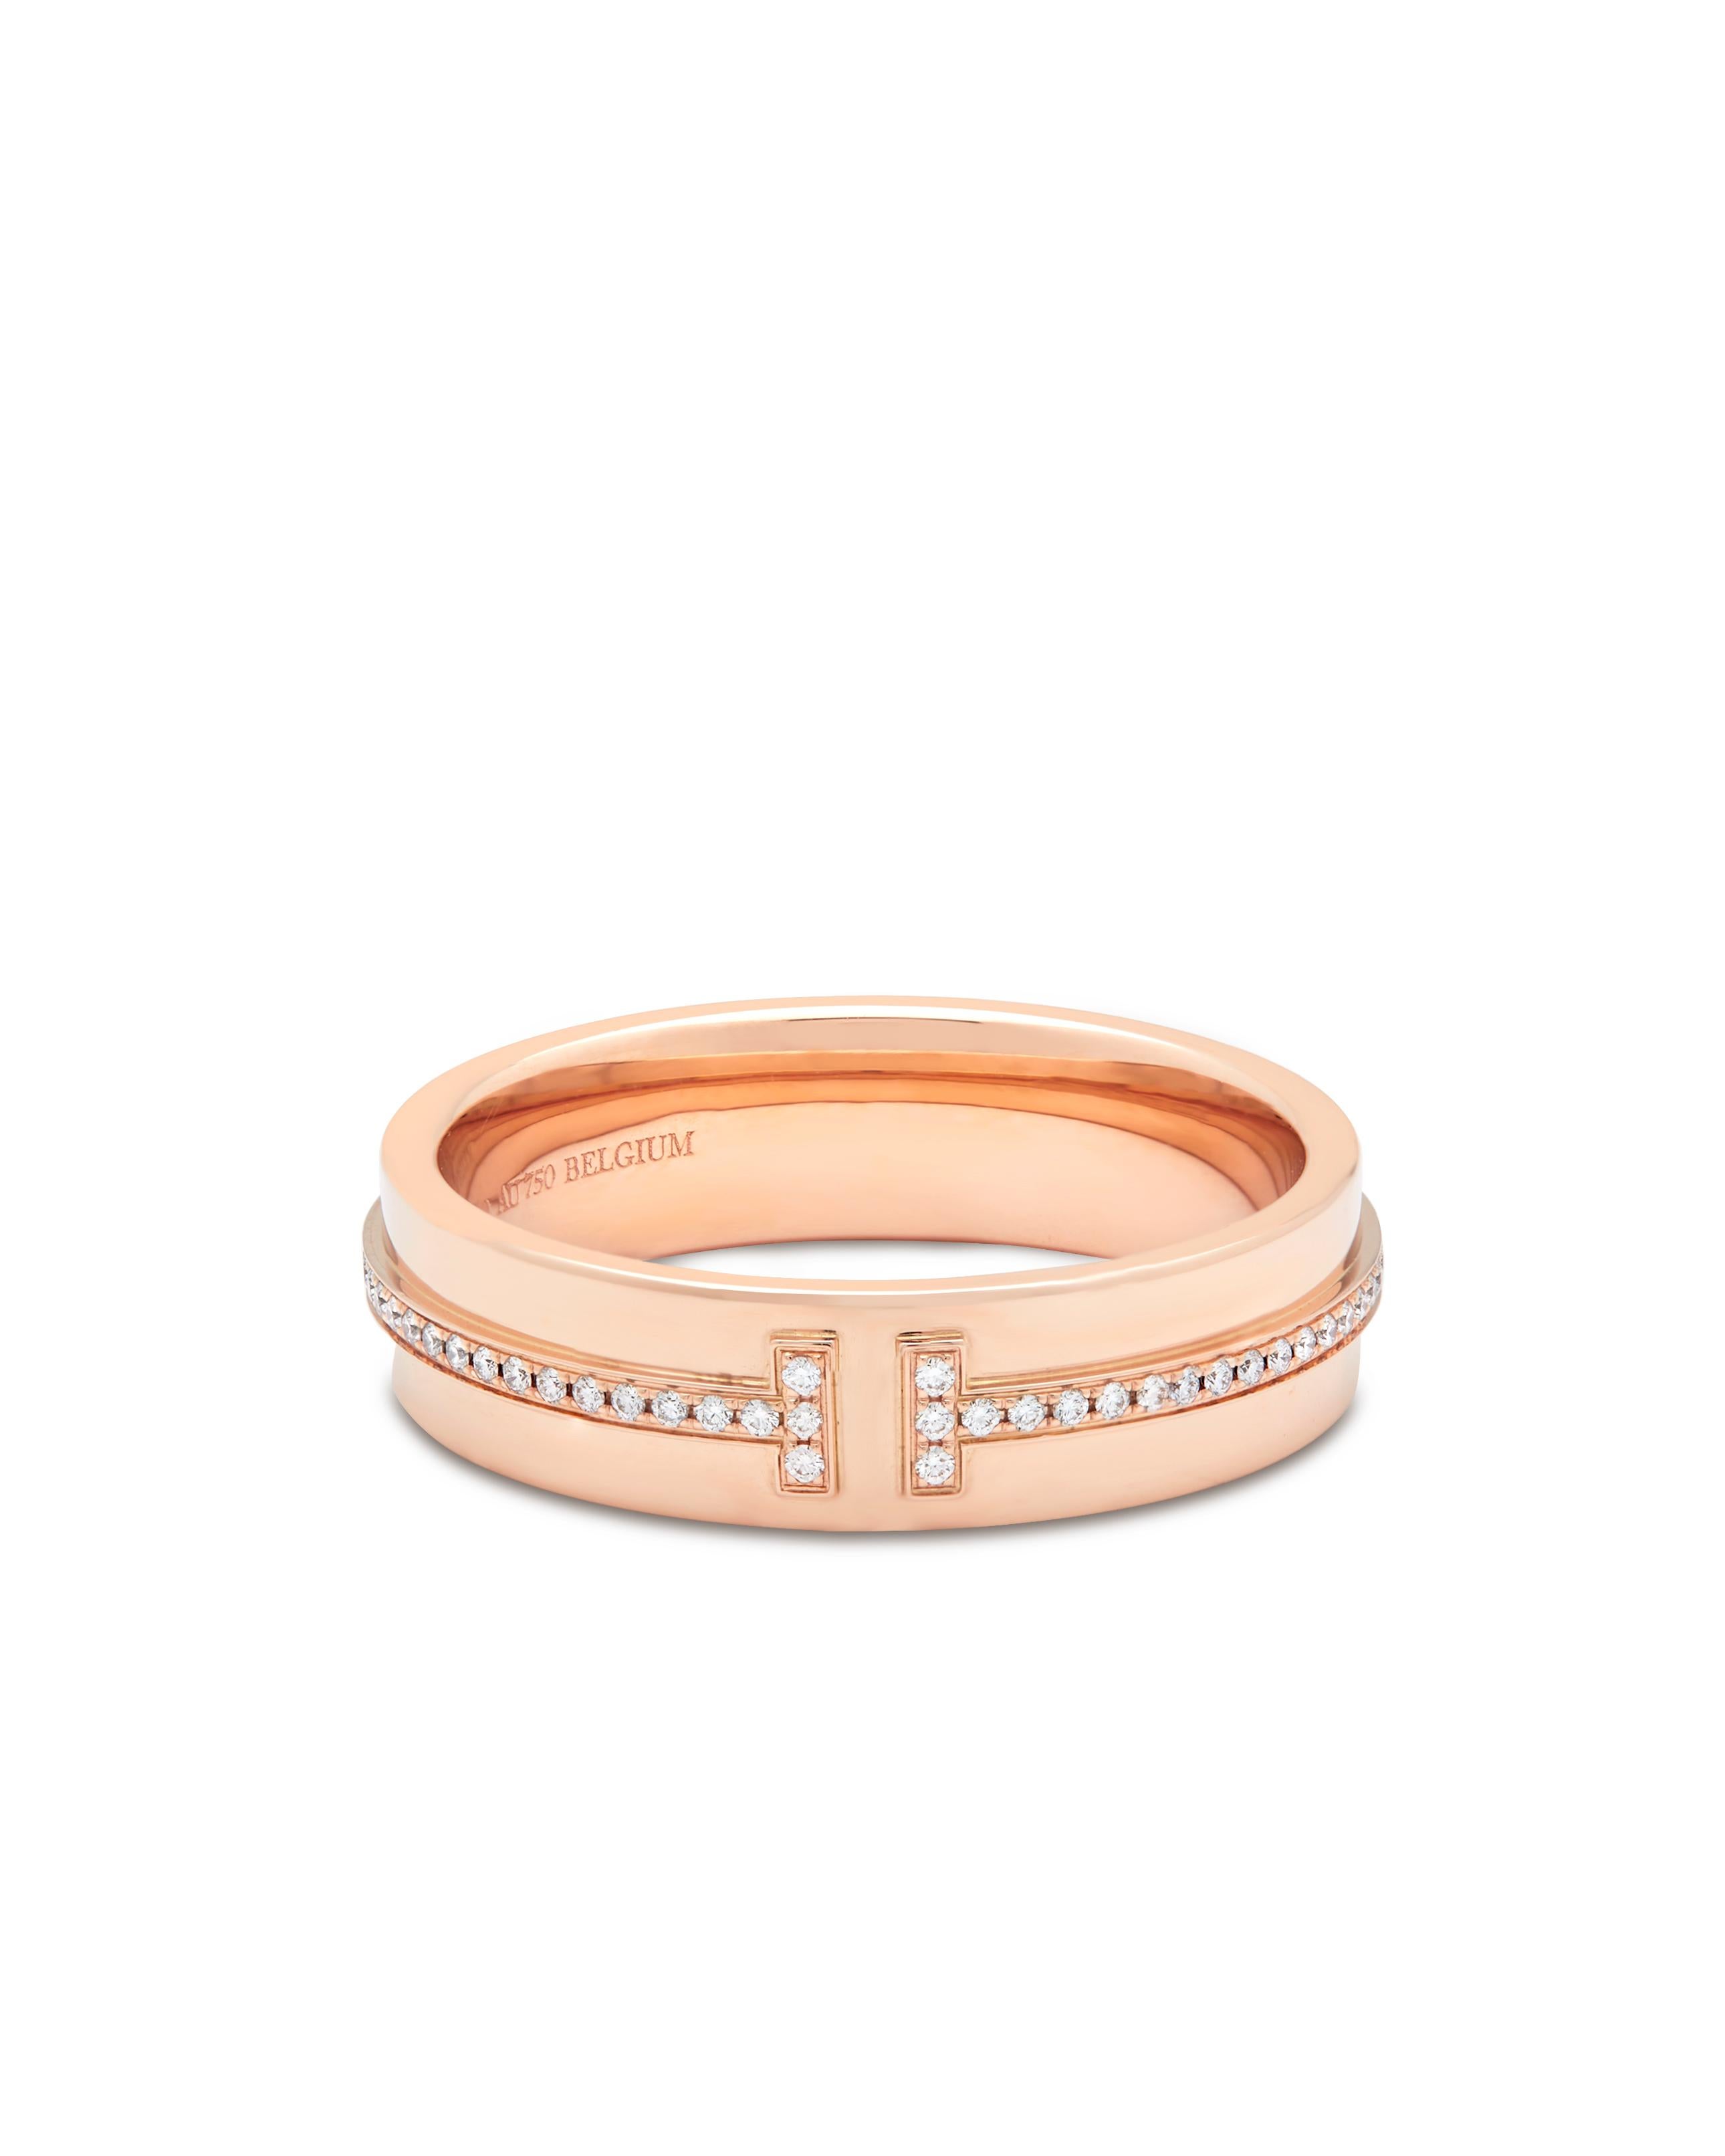 Tiffany Rose gold diamond T ring Numéro de modèle : 60151041

Ce design iconique est une pièce contemporaine, sertie de diamants incrustés dans le T.

Signé Tiffany & Co Belguim

Or rose 18k avec diamants ronds de taille brillant
Taille 58